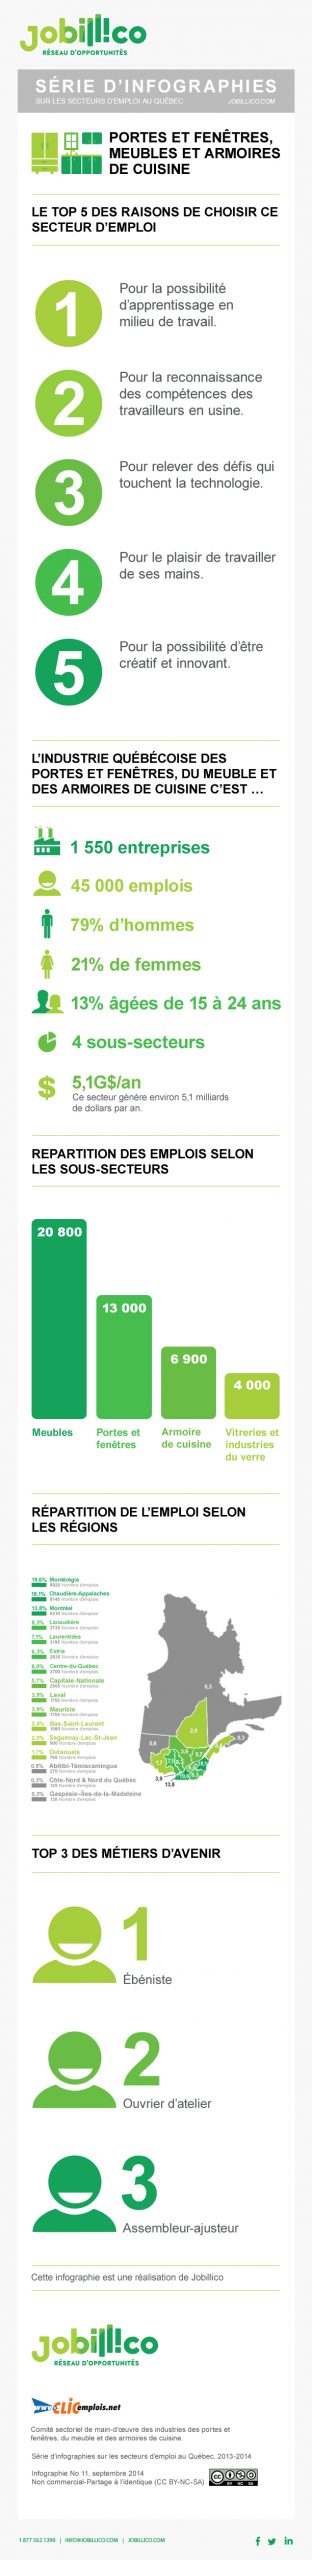 infographie représentant les chiffres de l'emploi du secteur des portes et fenêtres, meubles et armoires de cuisine au Québec 